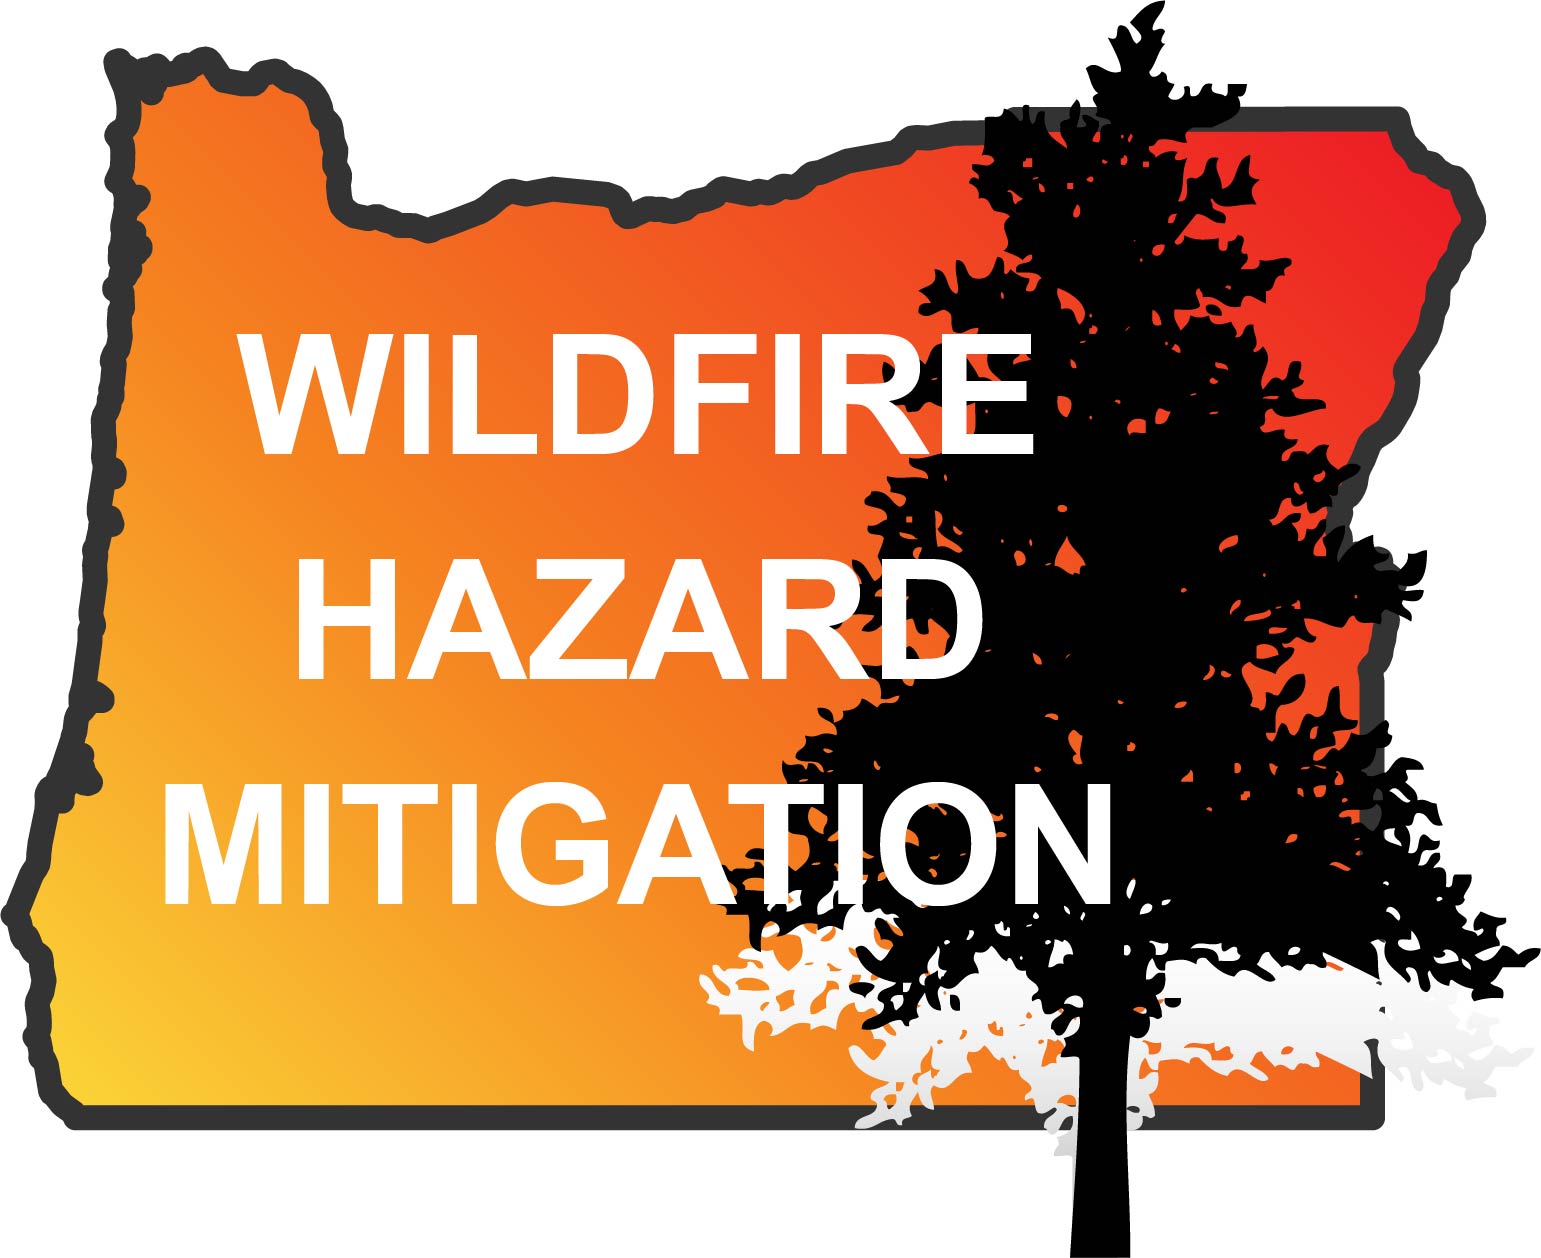 Wildfire Hazard Mitigation image